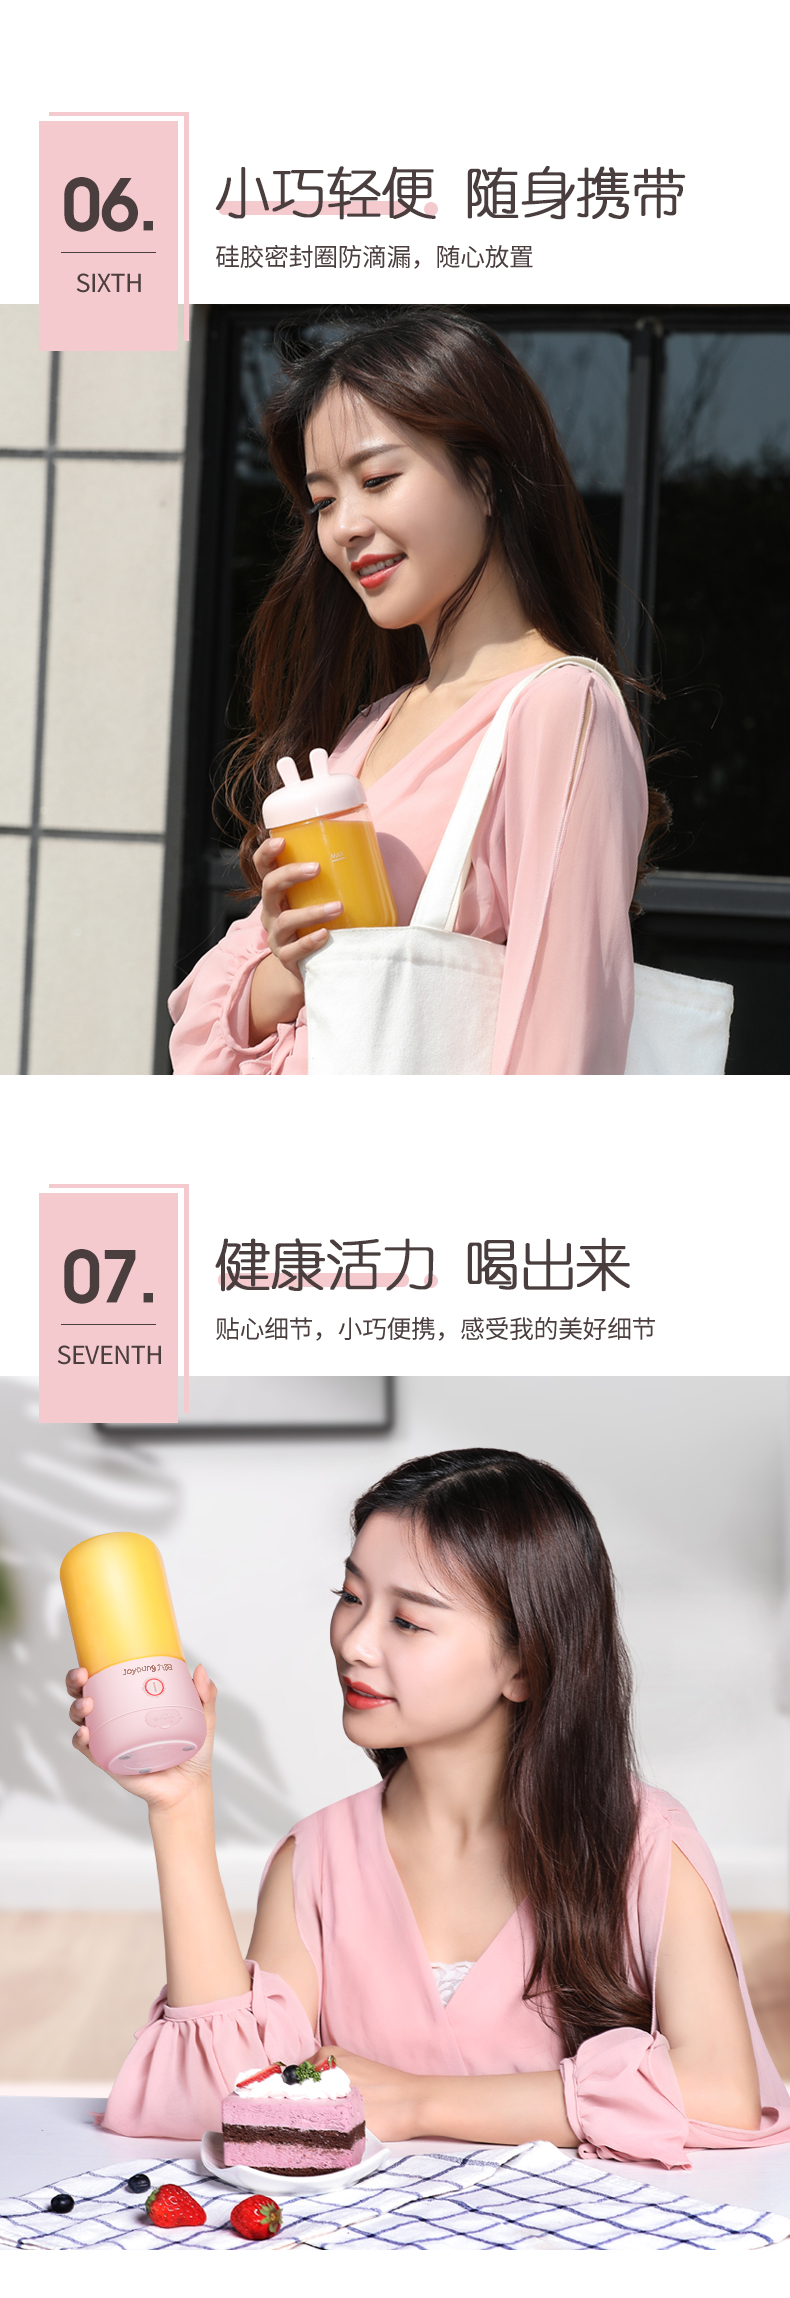 九阳L3-C8榨汁机小型便携式迷你电动多功能料理机果汁机